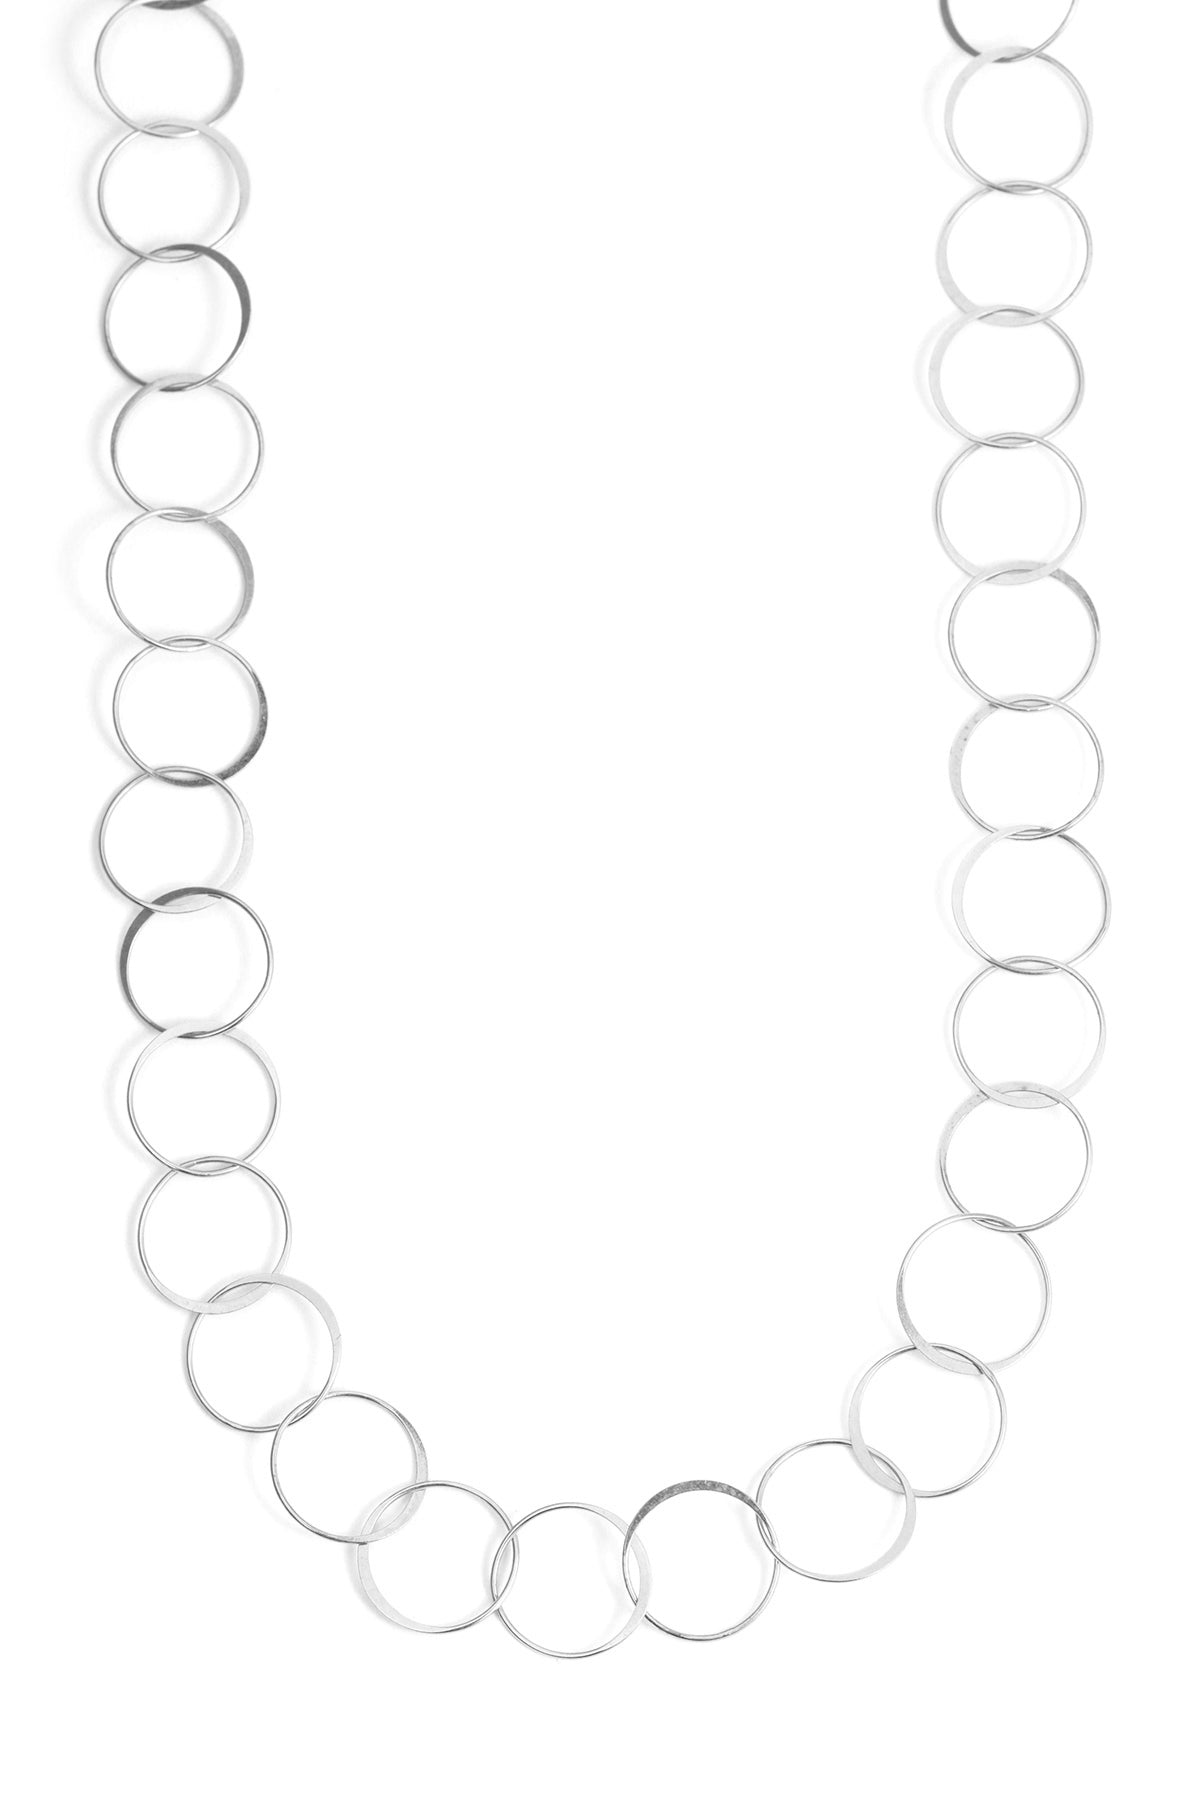 Handmade Chain - 17 Inch Length